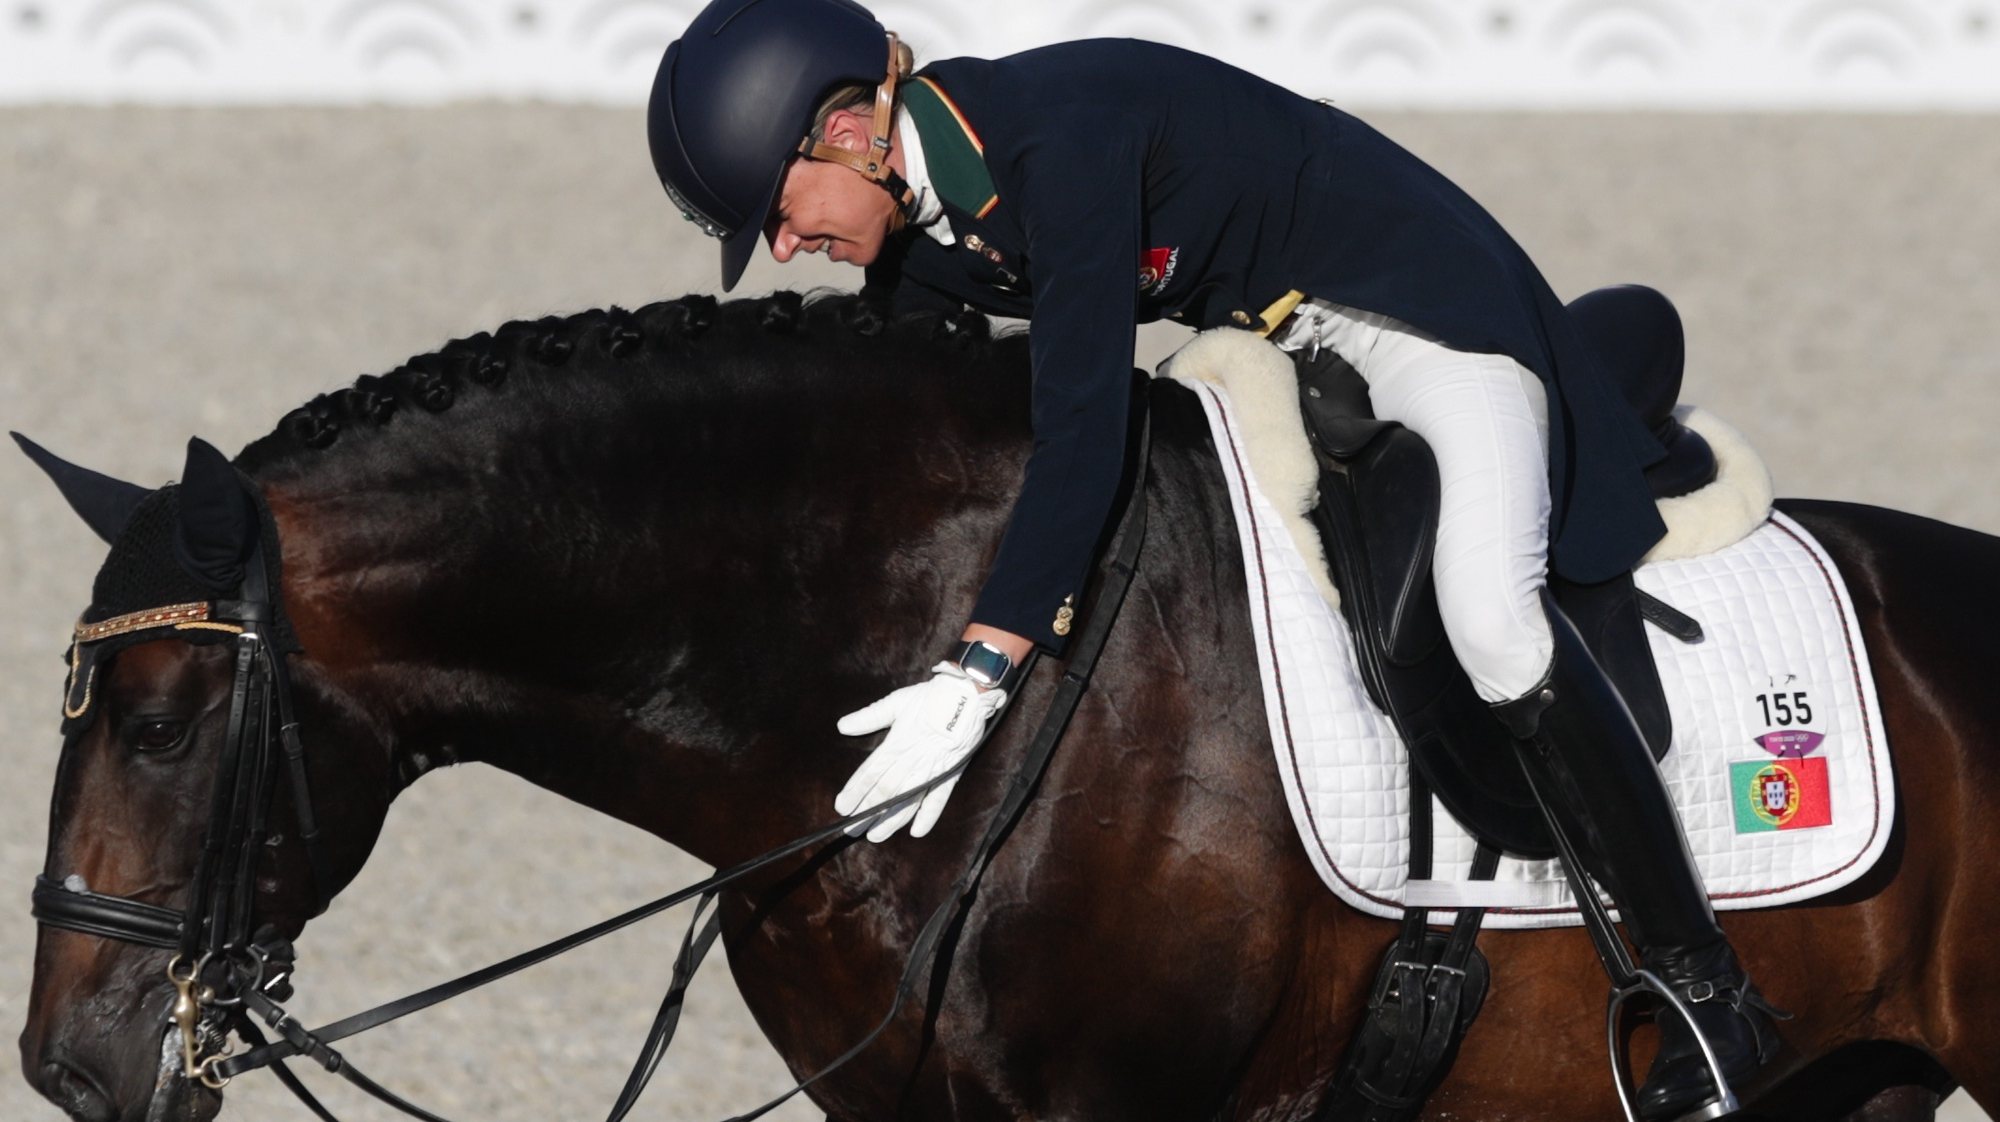 A cavaleira portuguesa, Maria Caetano, montando Fenix de Tineo, em ação na prova de Ensino em Equestre dos Jogos Olimpicos de Tóquio2020, no Parque Equestre de Tóquio, Japão, 27 de julho de 2021. TIAGO PETINGA/LUSA